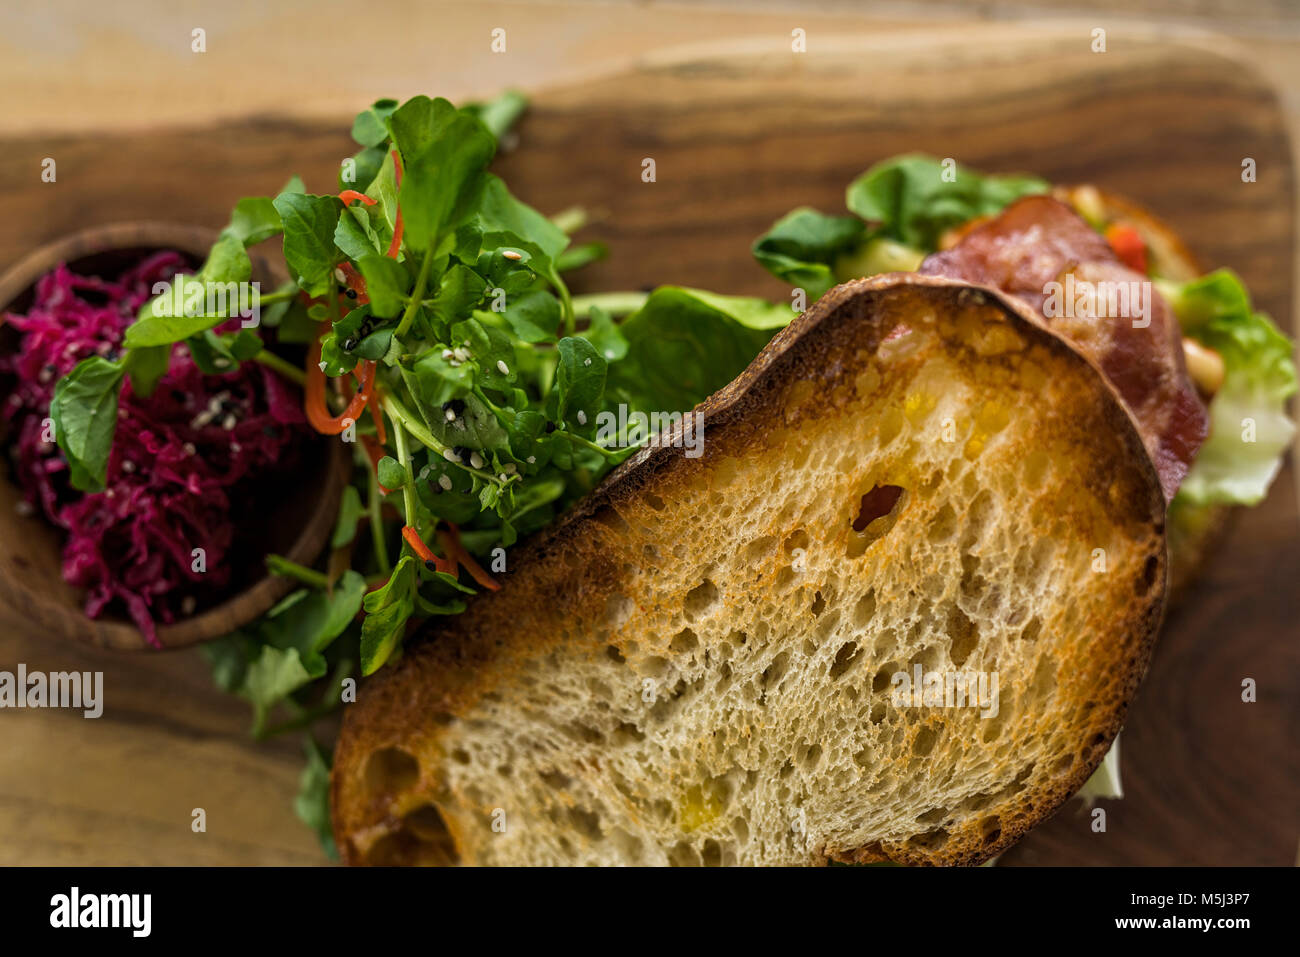 Dettaglio di crosta di pane con insalata verde e barbabietola Foto Stock